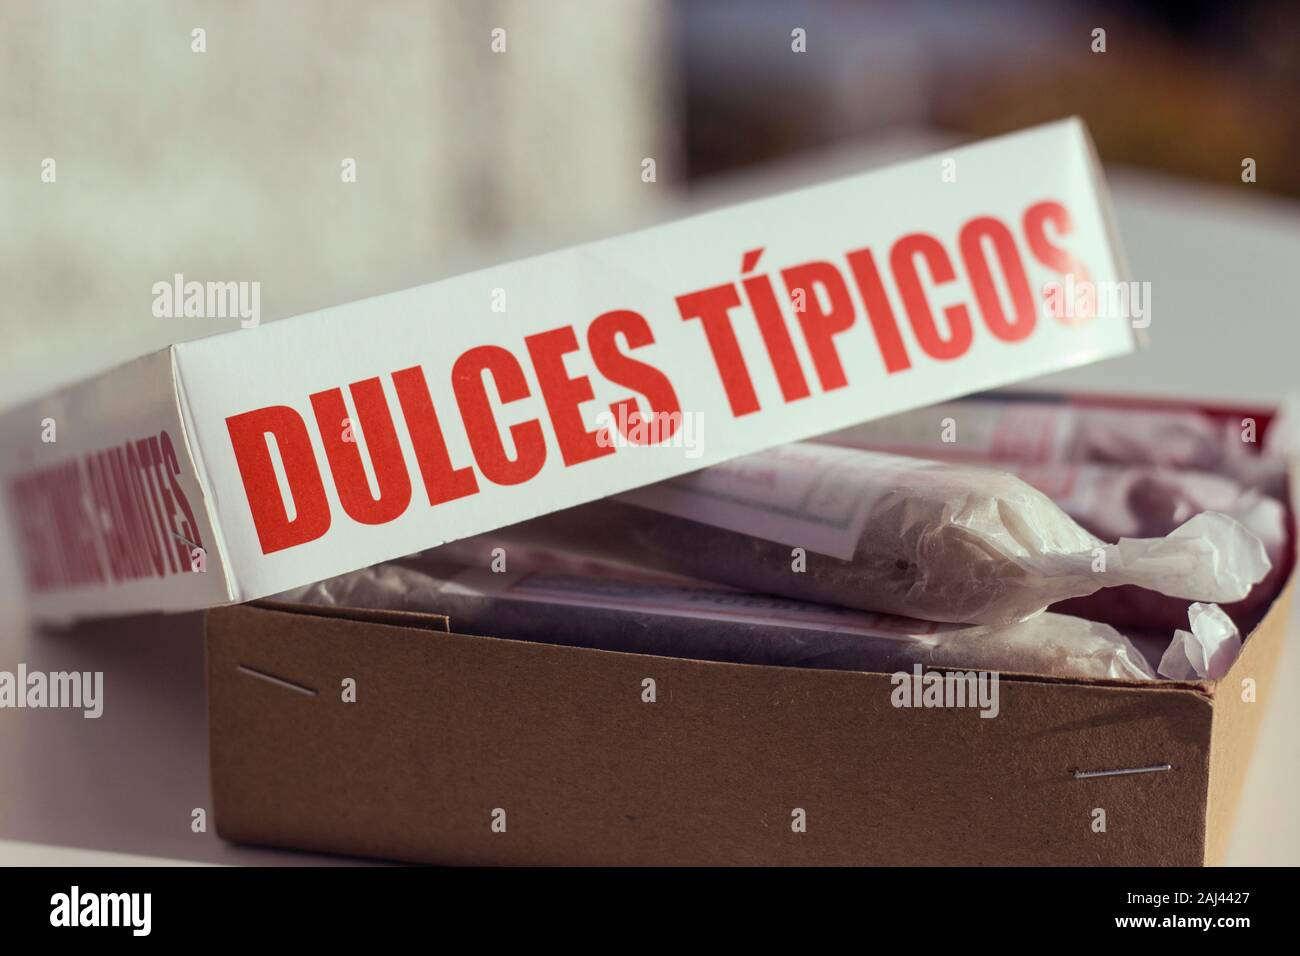 Mexican Dulces Tipicos.La donna è in possesso di una scatola con un vasto assortimento di dolci tradizionali Foto Stock